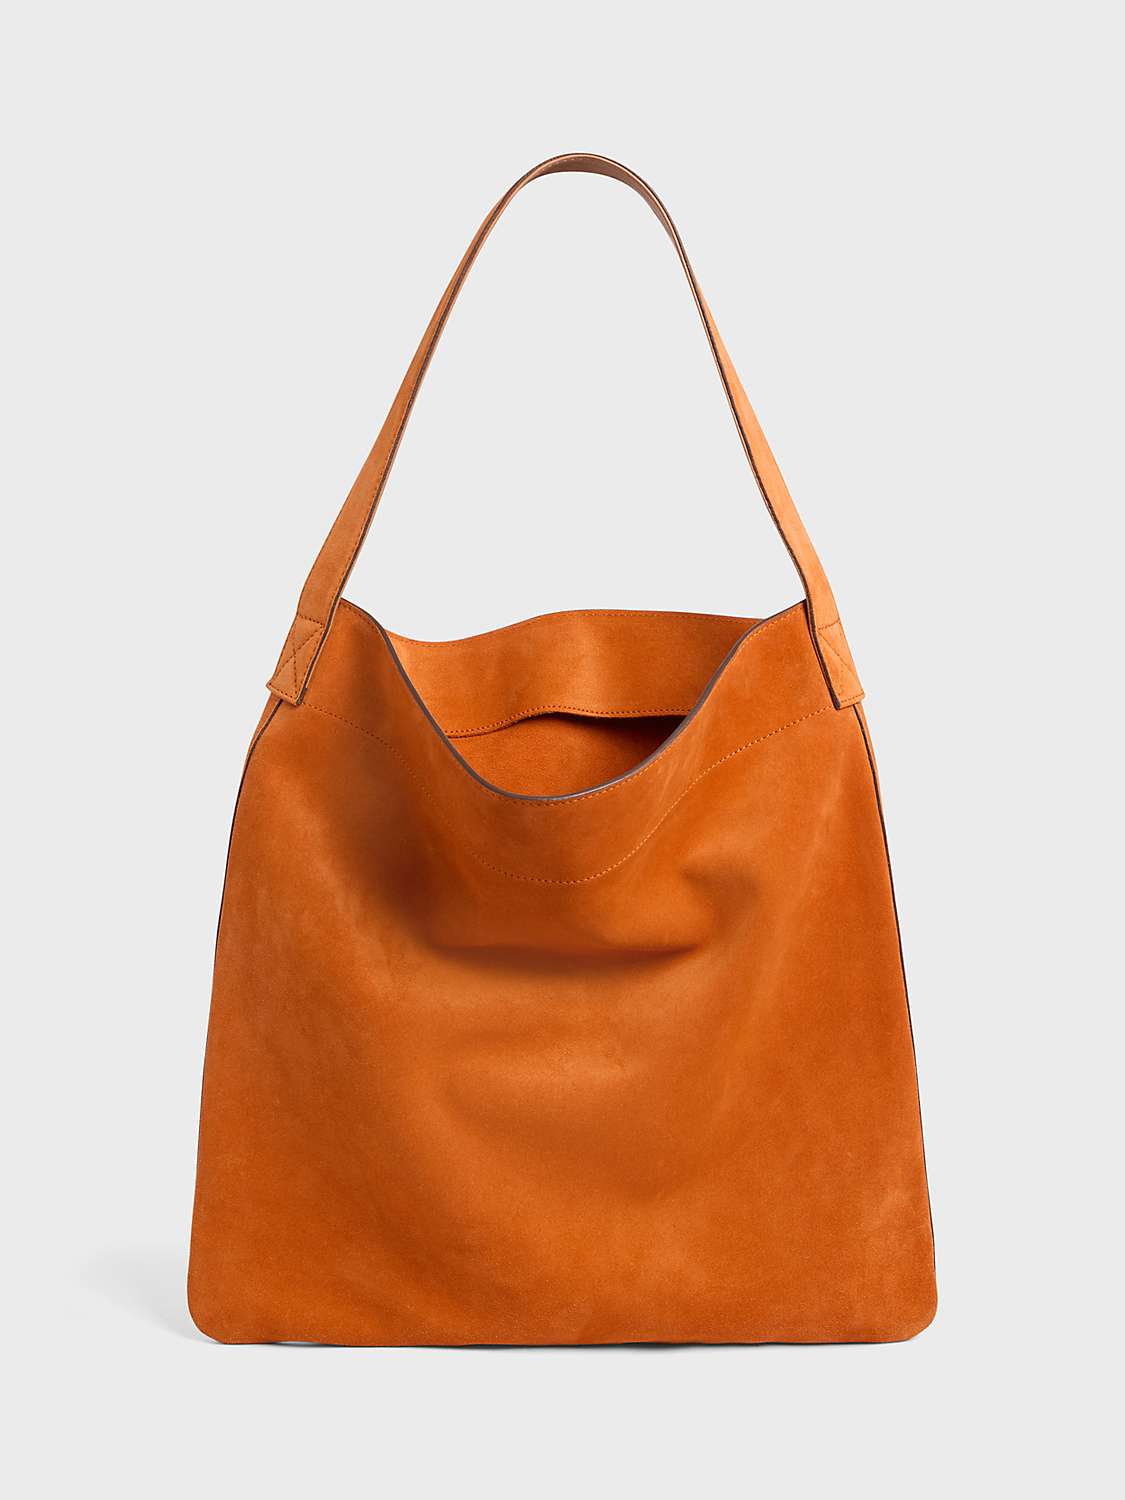 Buy Gerard Darel The Lady Bag Online at johnlewis.com